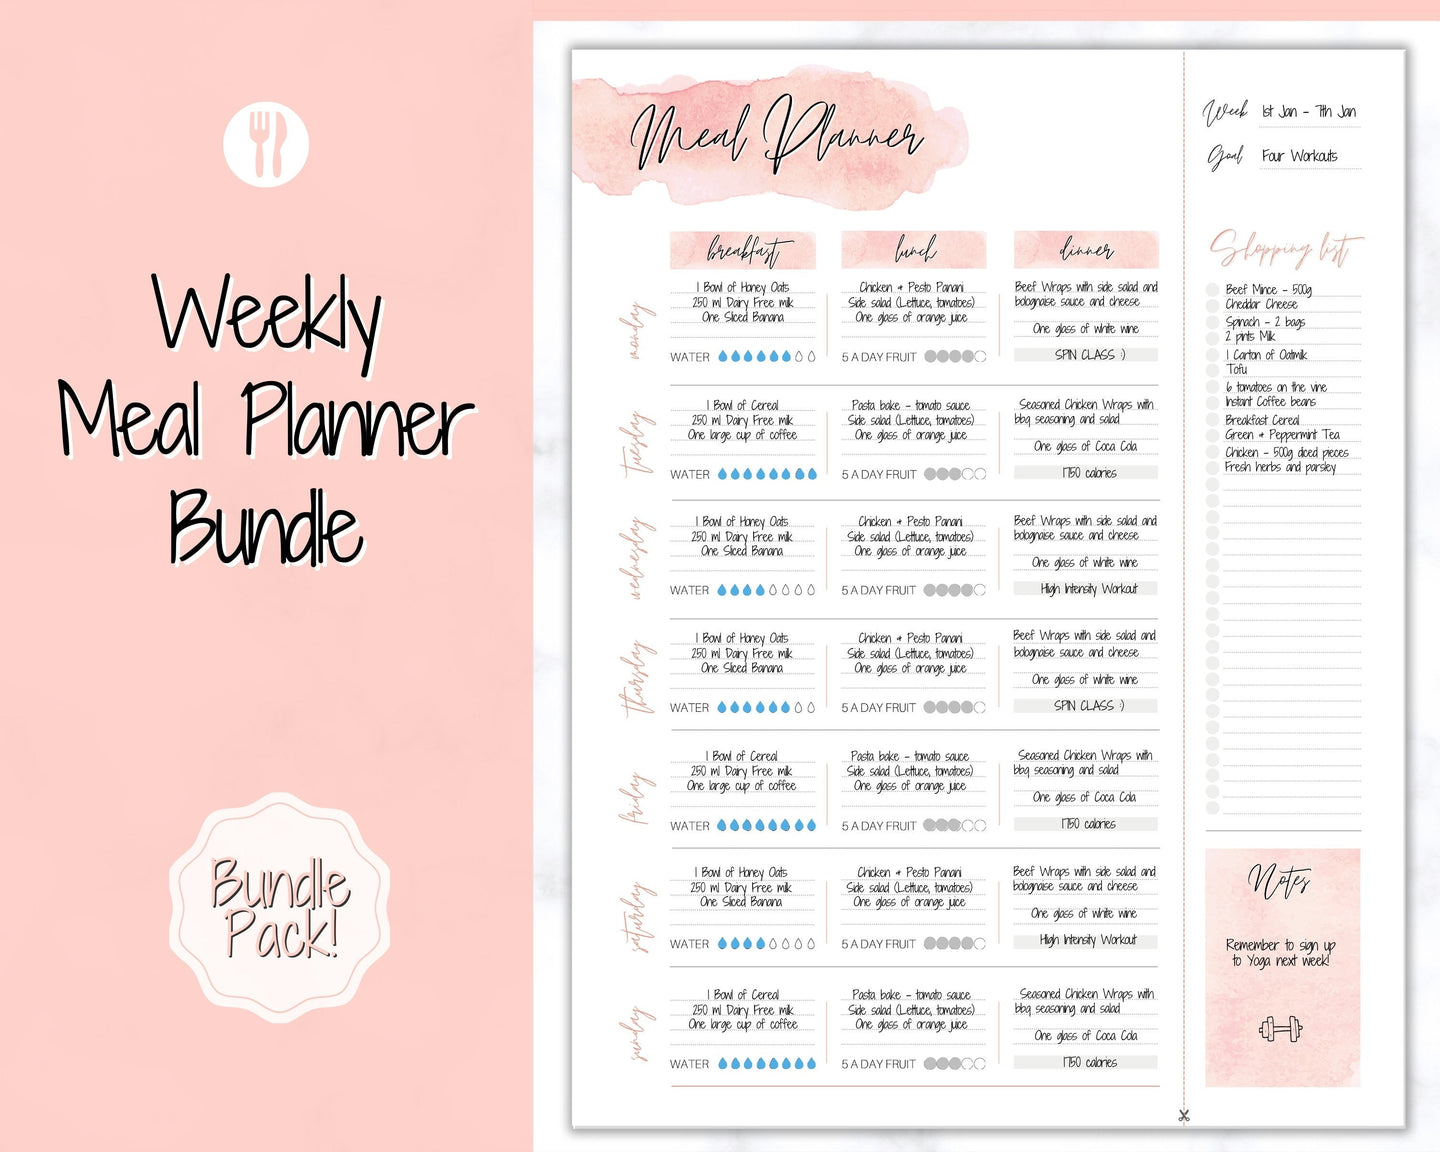 Weekly Meal Planner Printable, Food Diary, Meal Tracker, Food Journal, Menu Plan & Prep, BONUS Grocery List! Diet, Fitness, Health | Pink Watercolor